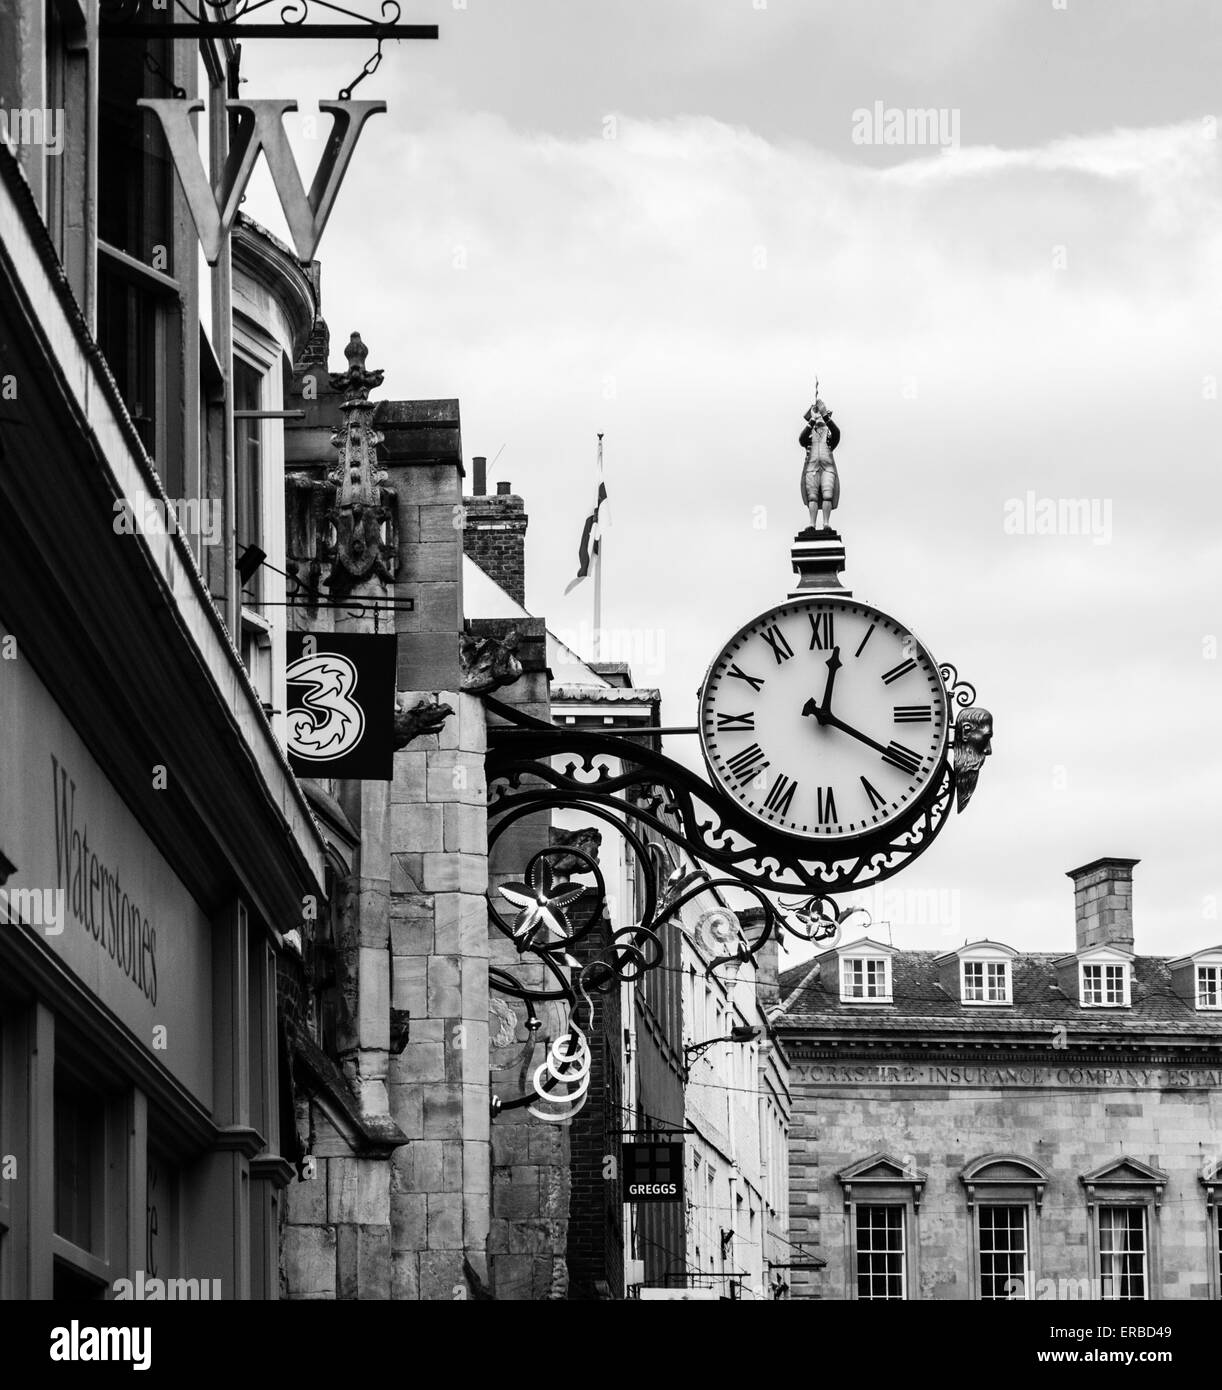 Noir et blanc, St Martin Le Grand réveil de l'Église avec le peu d'amiral et de son sextant, le top. Coney Street, New York. Angleterre, Royaume-Uni Banque D'Images